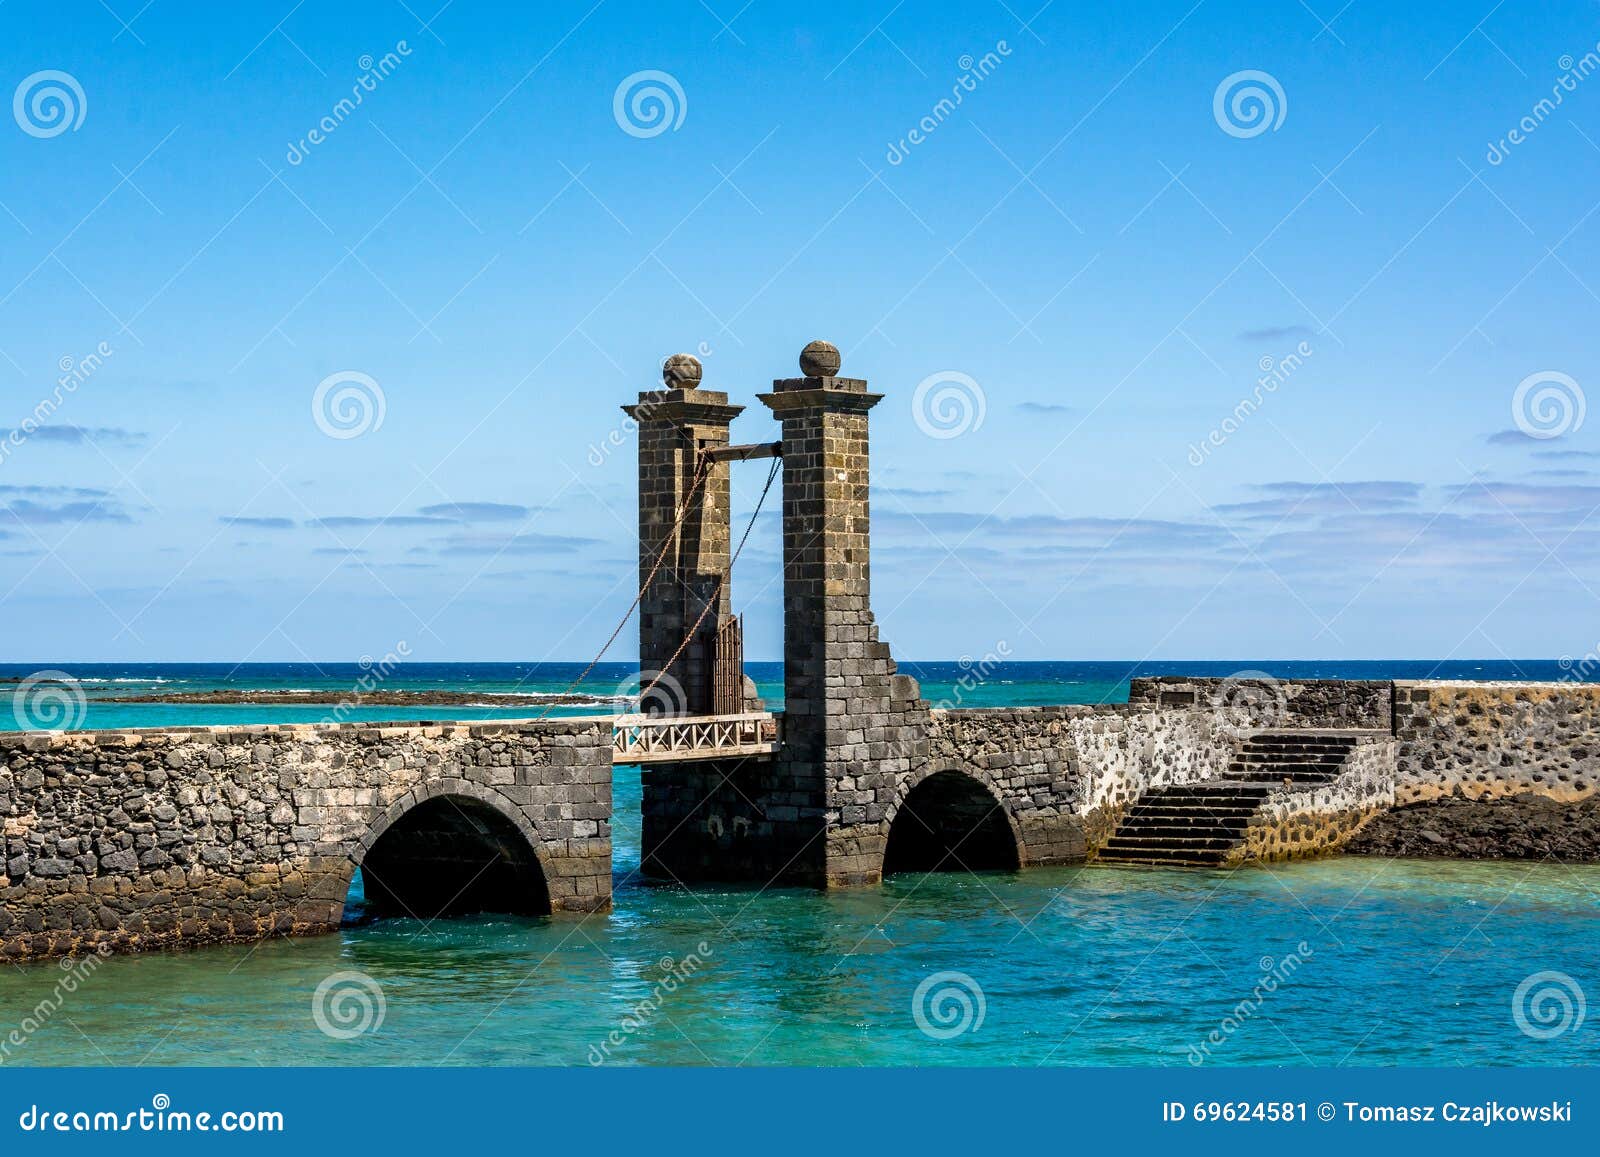 view of the bridge of the balls puente de las bolas in arrecife, lanzarote